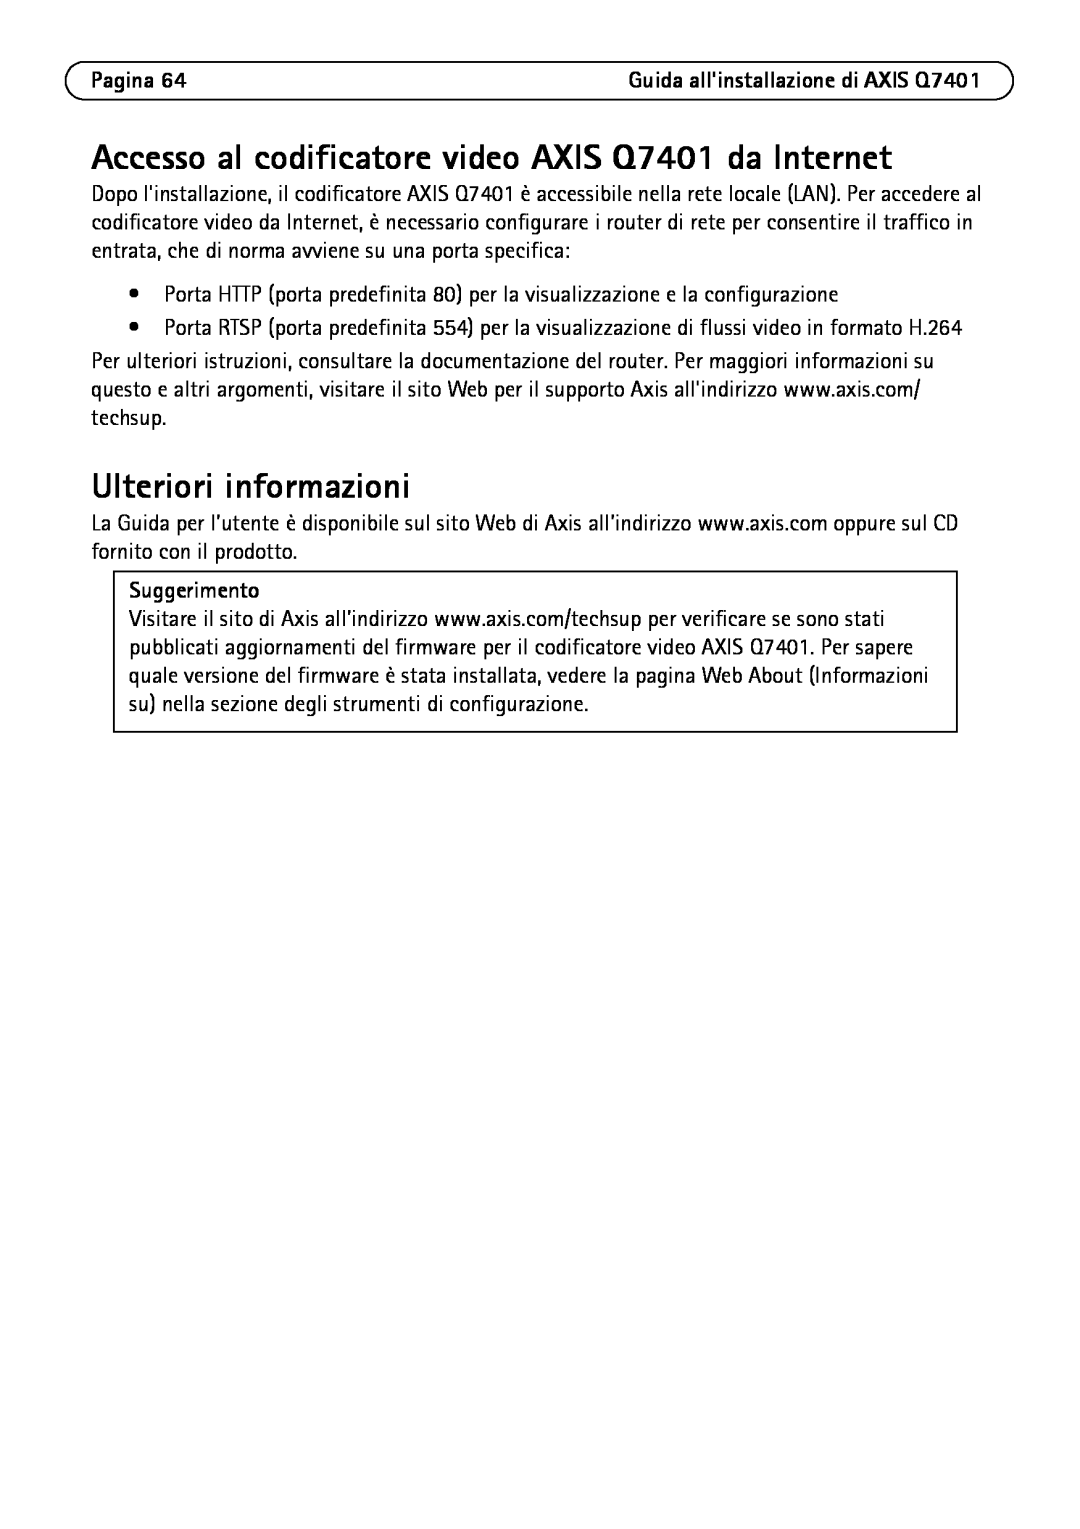 Axis Communications Q7401 manual Ulteriori informazioni, Pagina, Suggerimento 